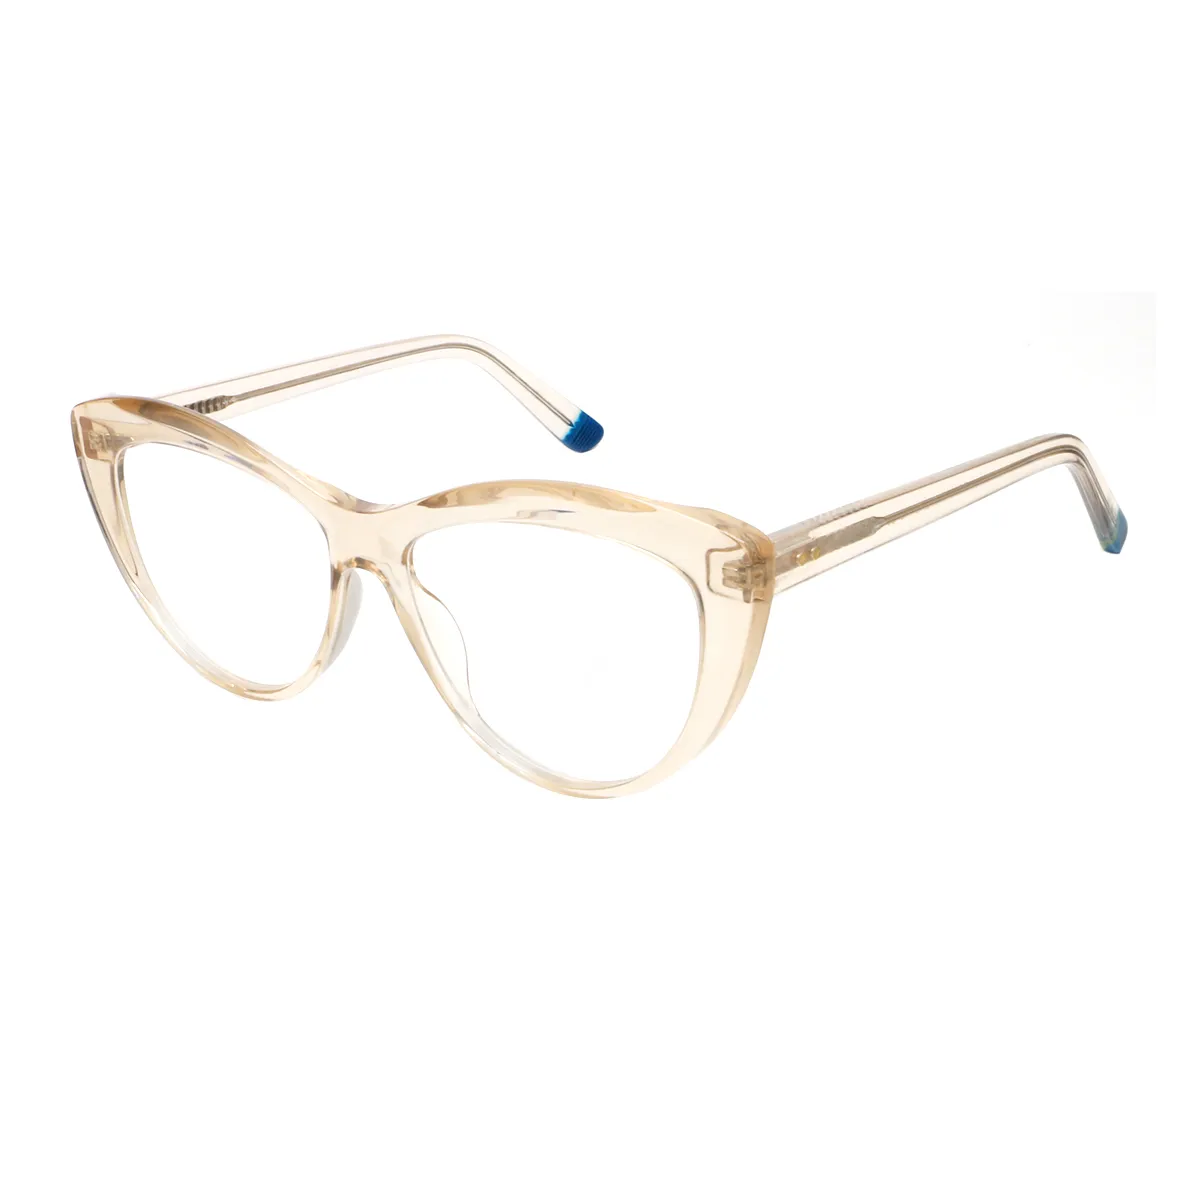 Coates - Cat-eye Brown Glasses for Women